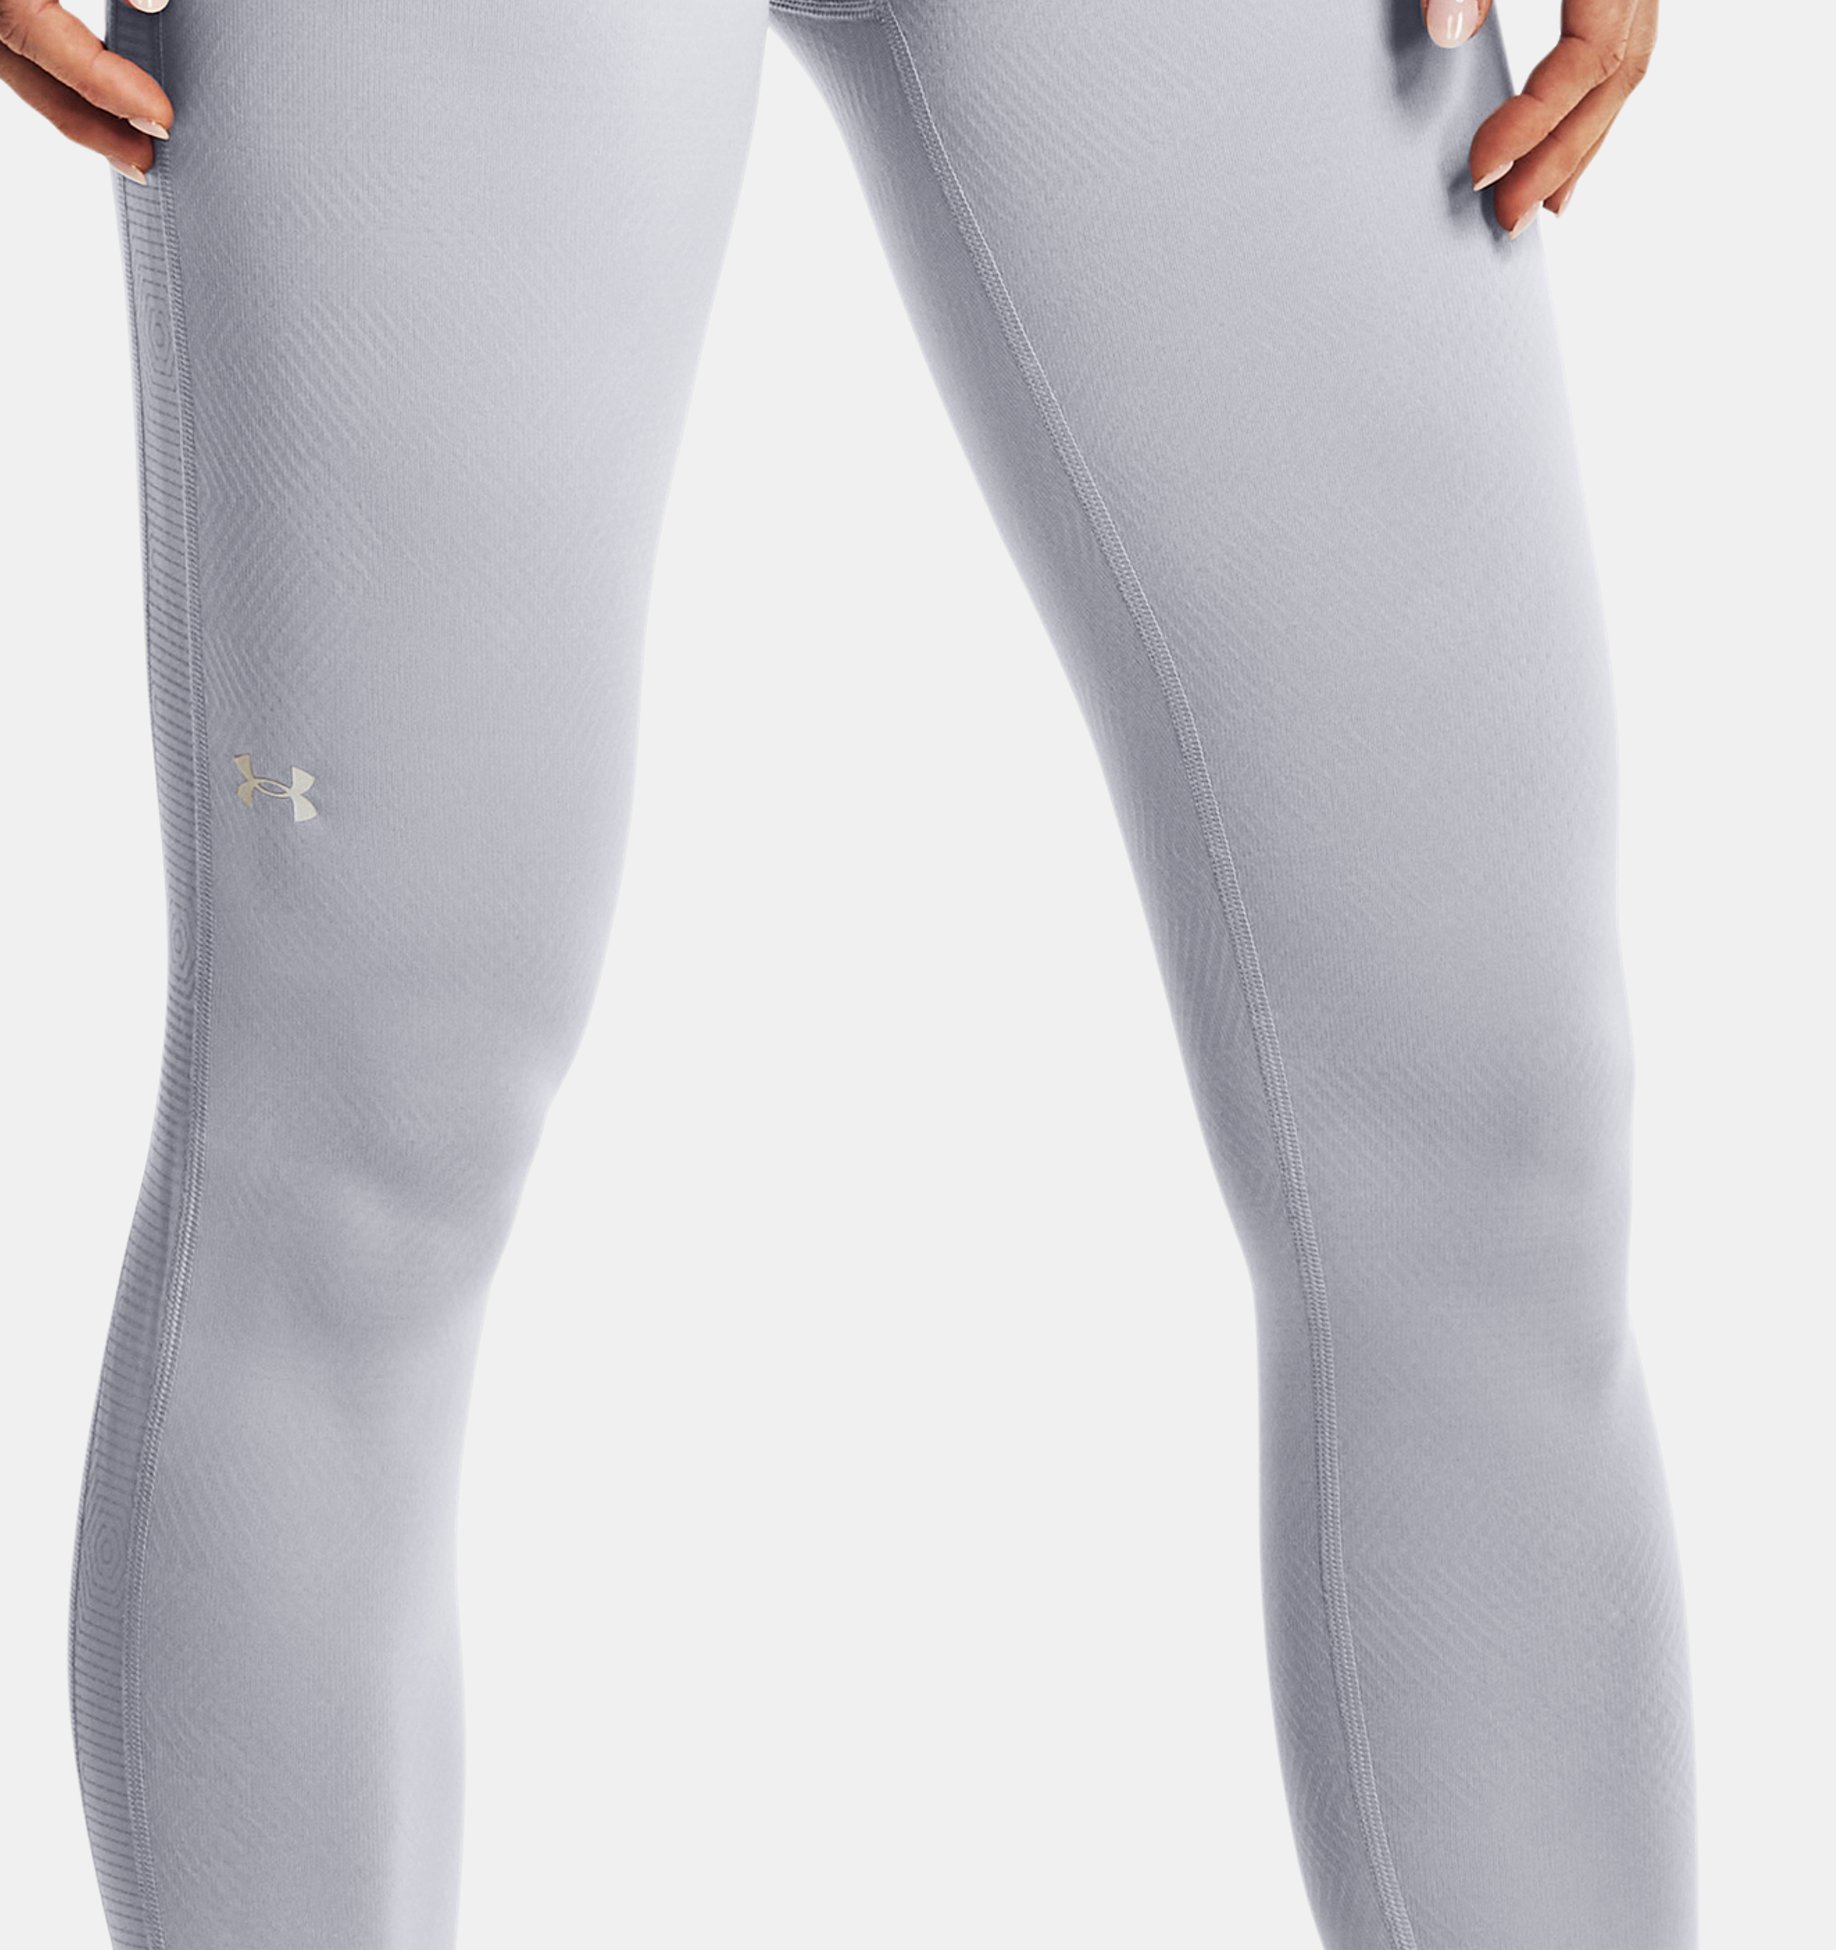 ColdGear® Infrared Full-Length Leggings |